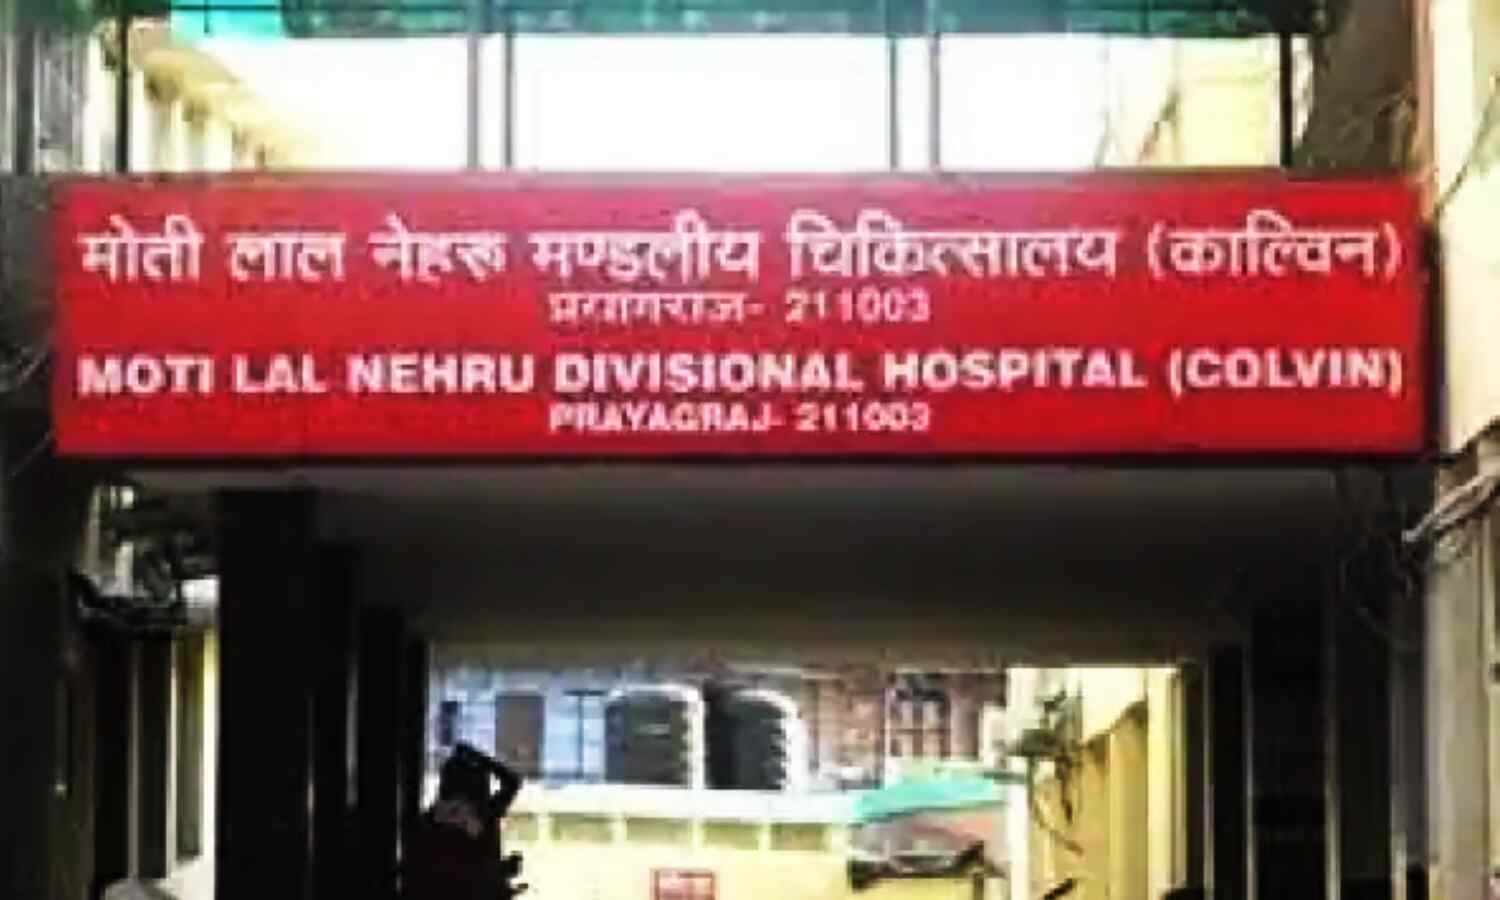 Prayagraj News : जानिए ऐसे अस्पताल के बारे में जहां उतारा जाता है मोबाइल का नशा, खत्म हो जाती है लत